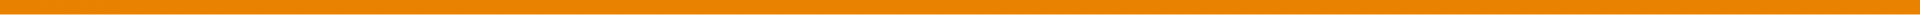 Orange Divider